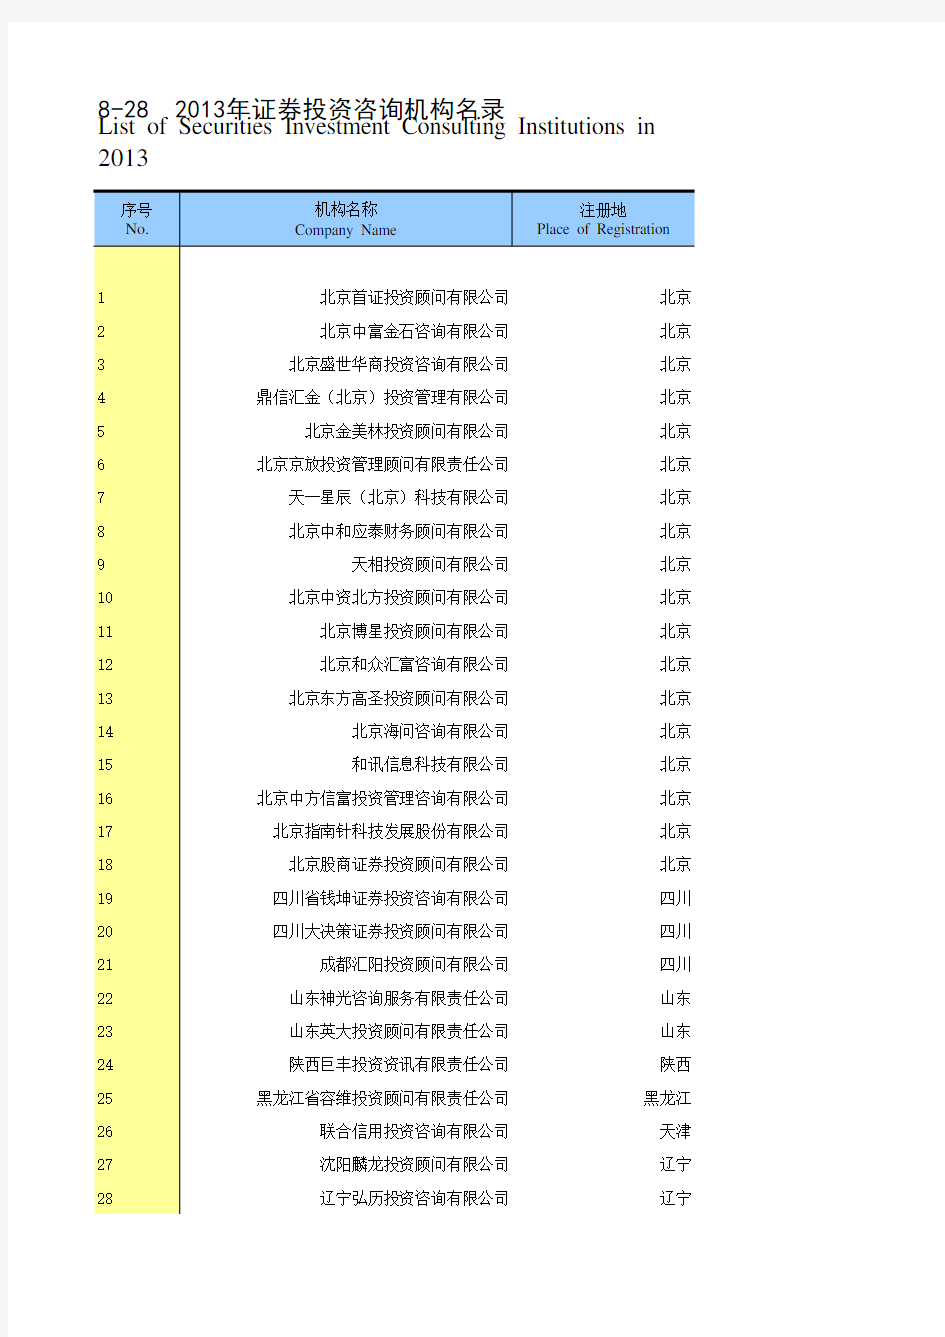 中国证券期货统计年鉴2014：8-28  2013年证券投资咨询机构名录